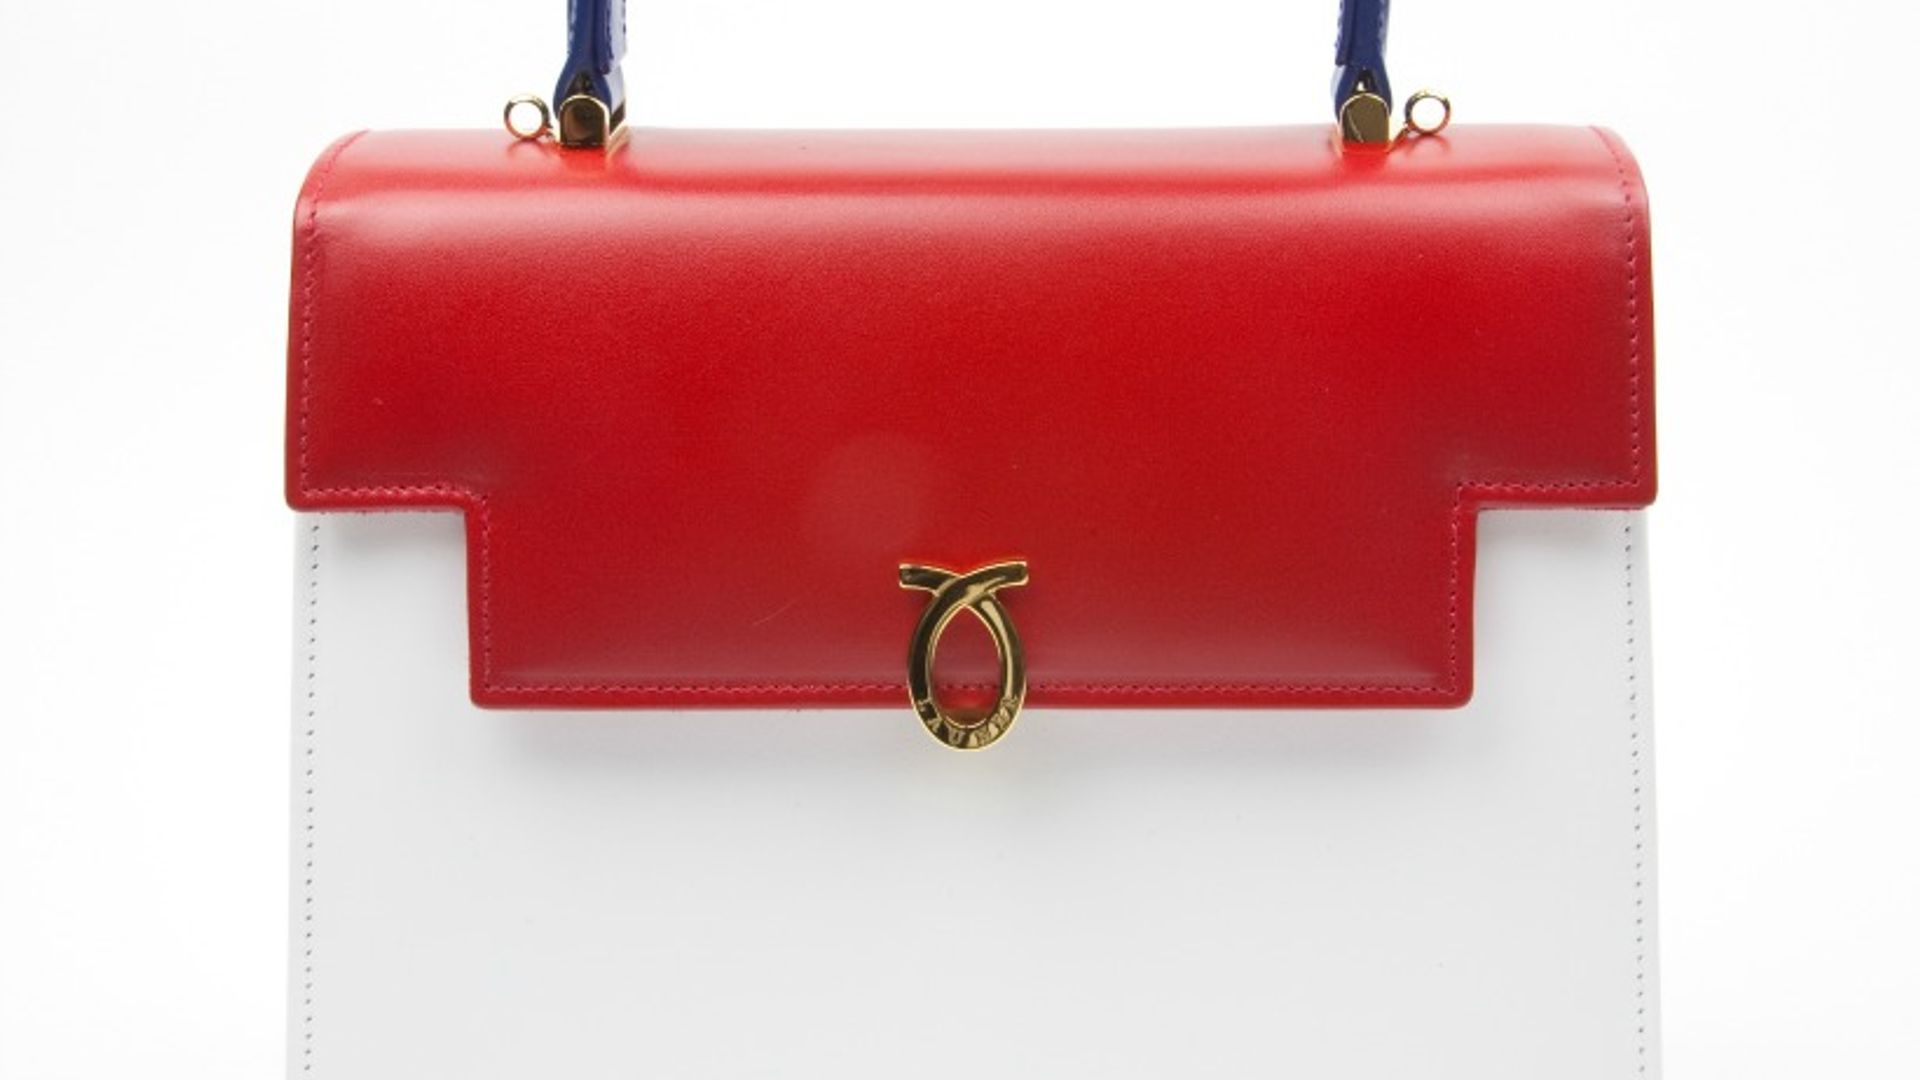 queen launer handbag